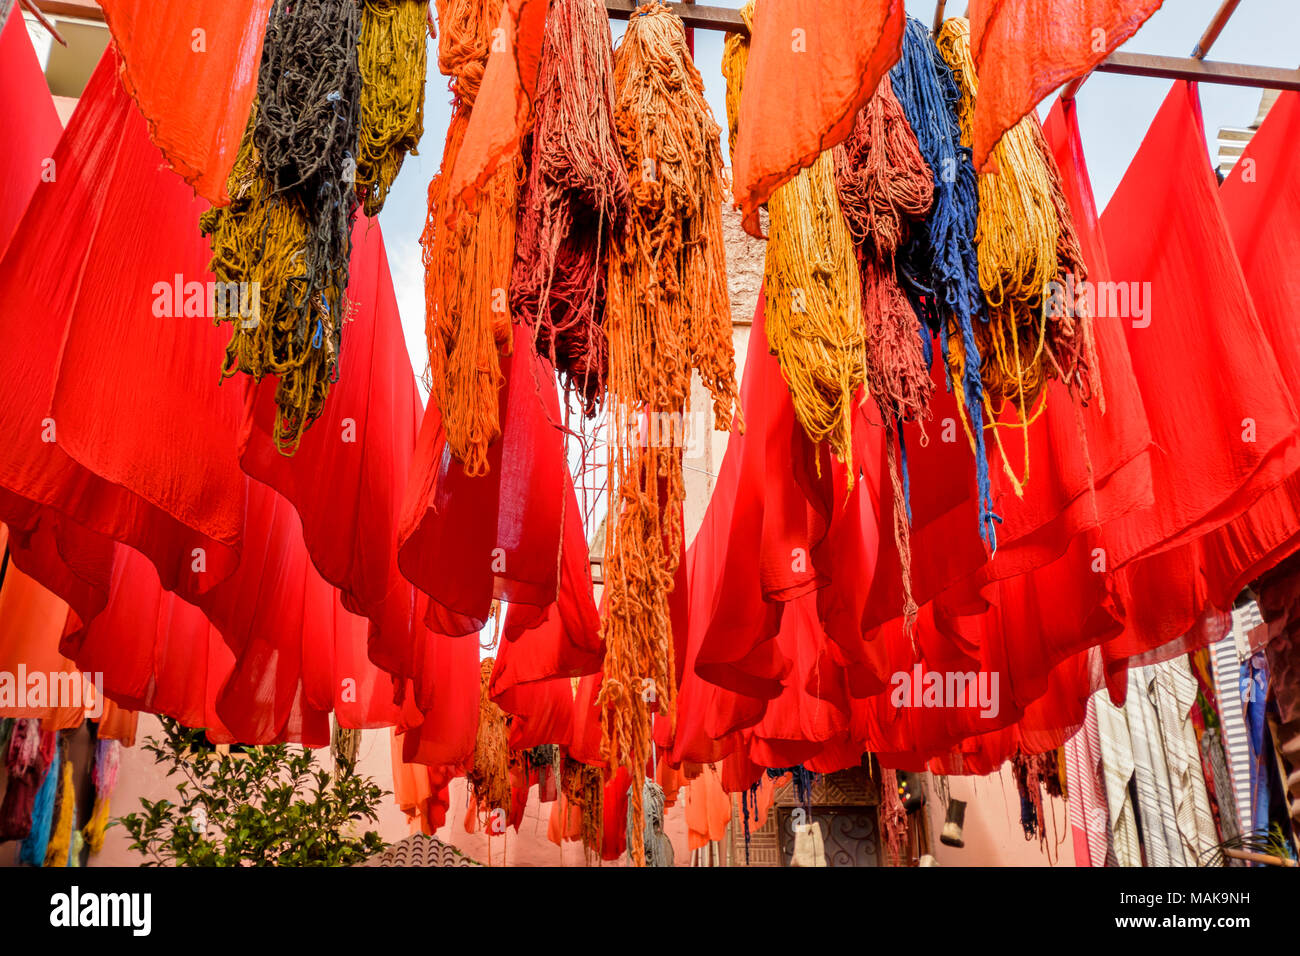 Il Marocco Marrakech Jemaa el Fna MEDINA SOUK tinto arancio e panno di lana multicolore appesi da poli di bambù per asciugare al sole Foto Stock